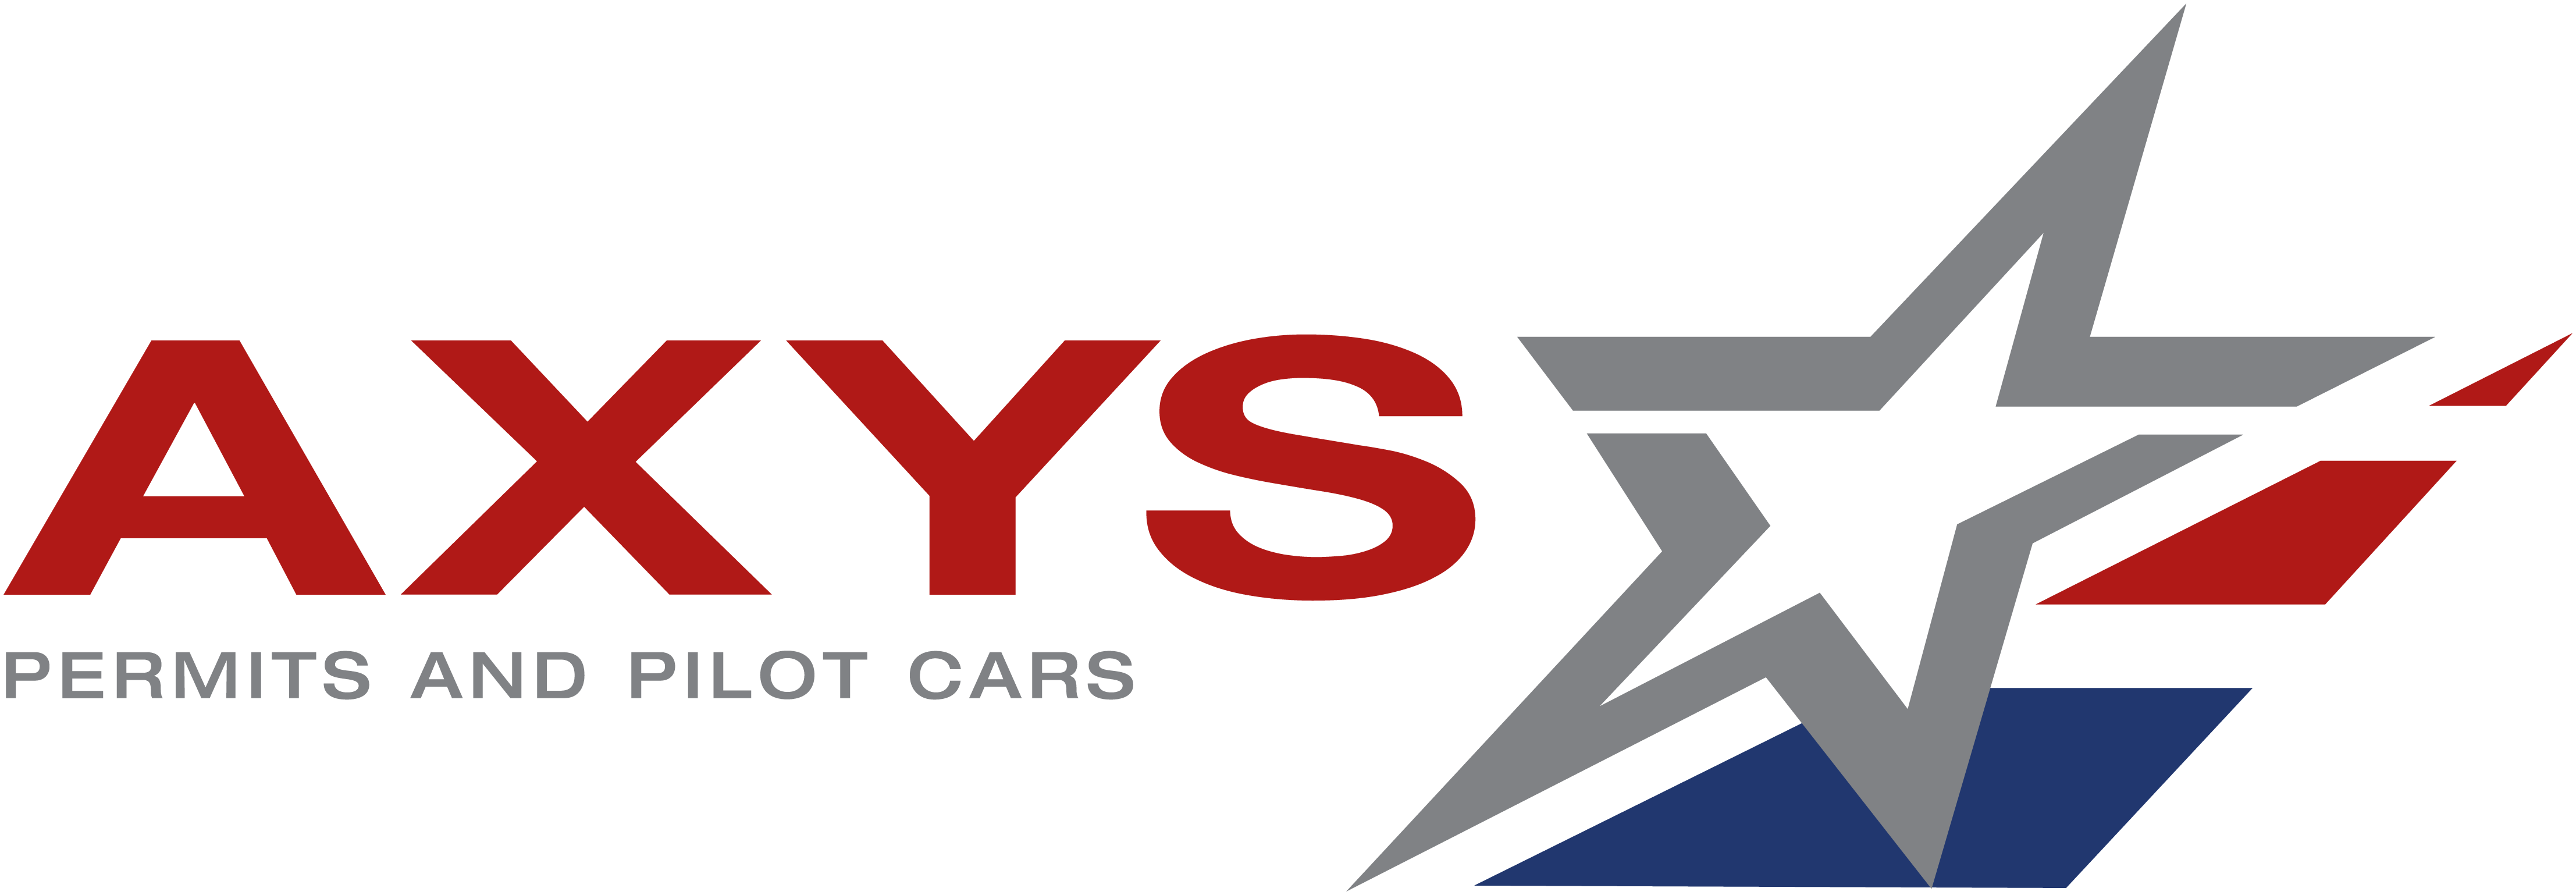 Axys Permits & Pilot Cars